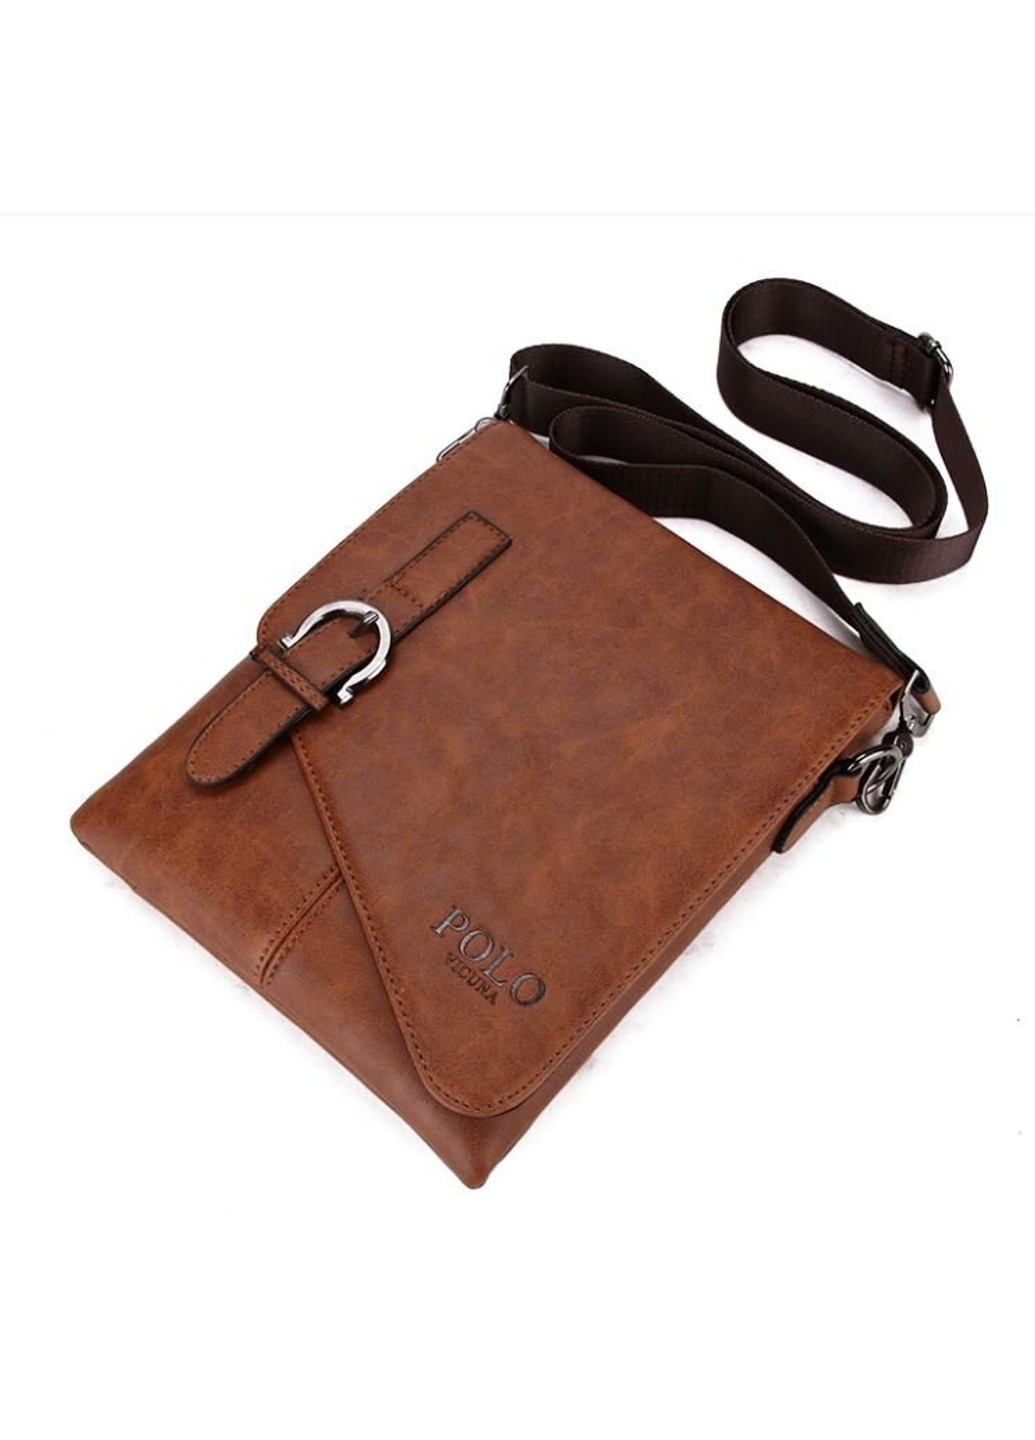 Мужская повседневная коричневая сумка 8838-1 Polo (263360645)